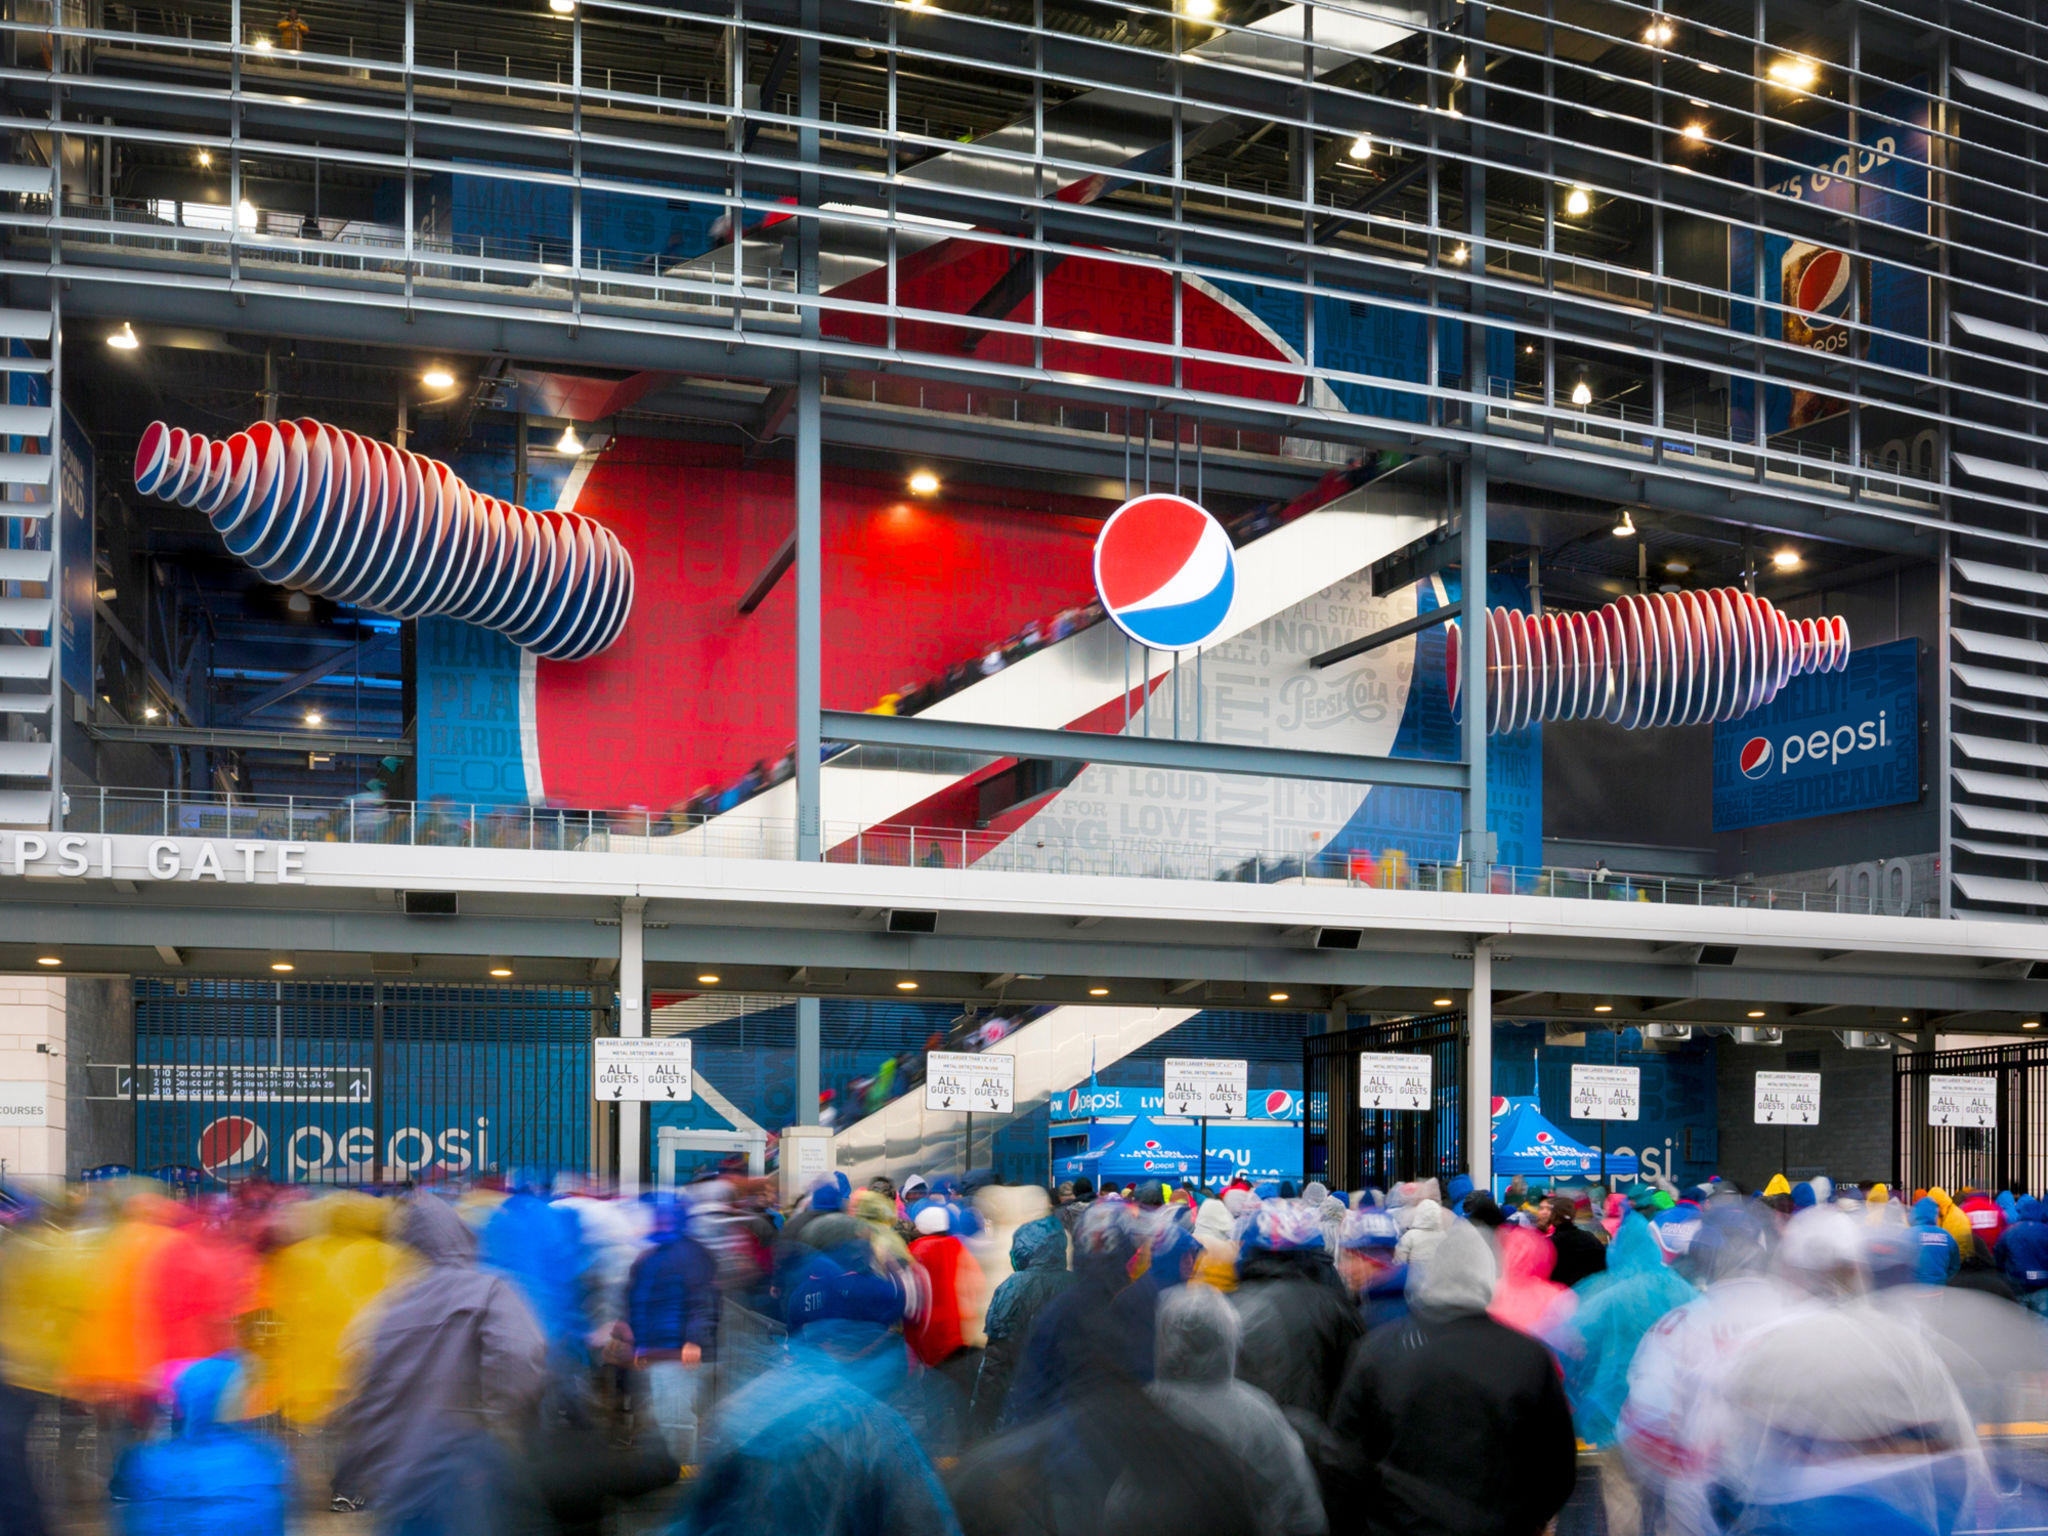 Pepsi MetLife Stadium